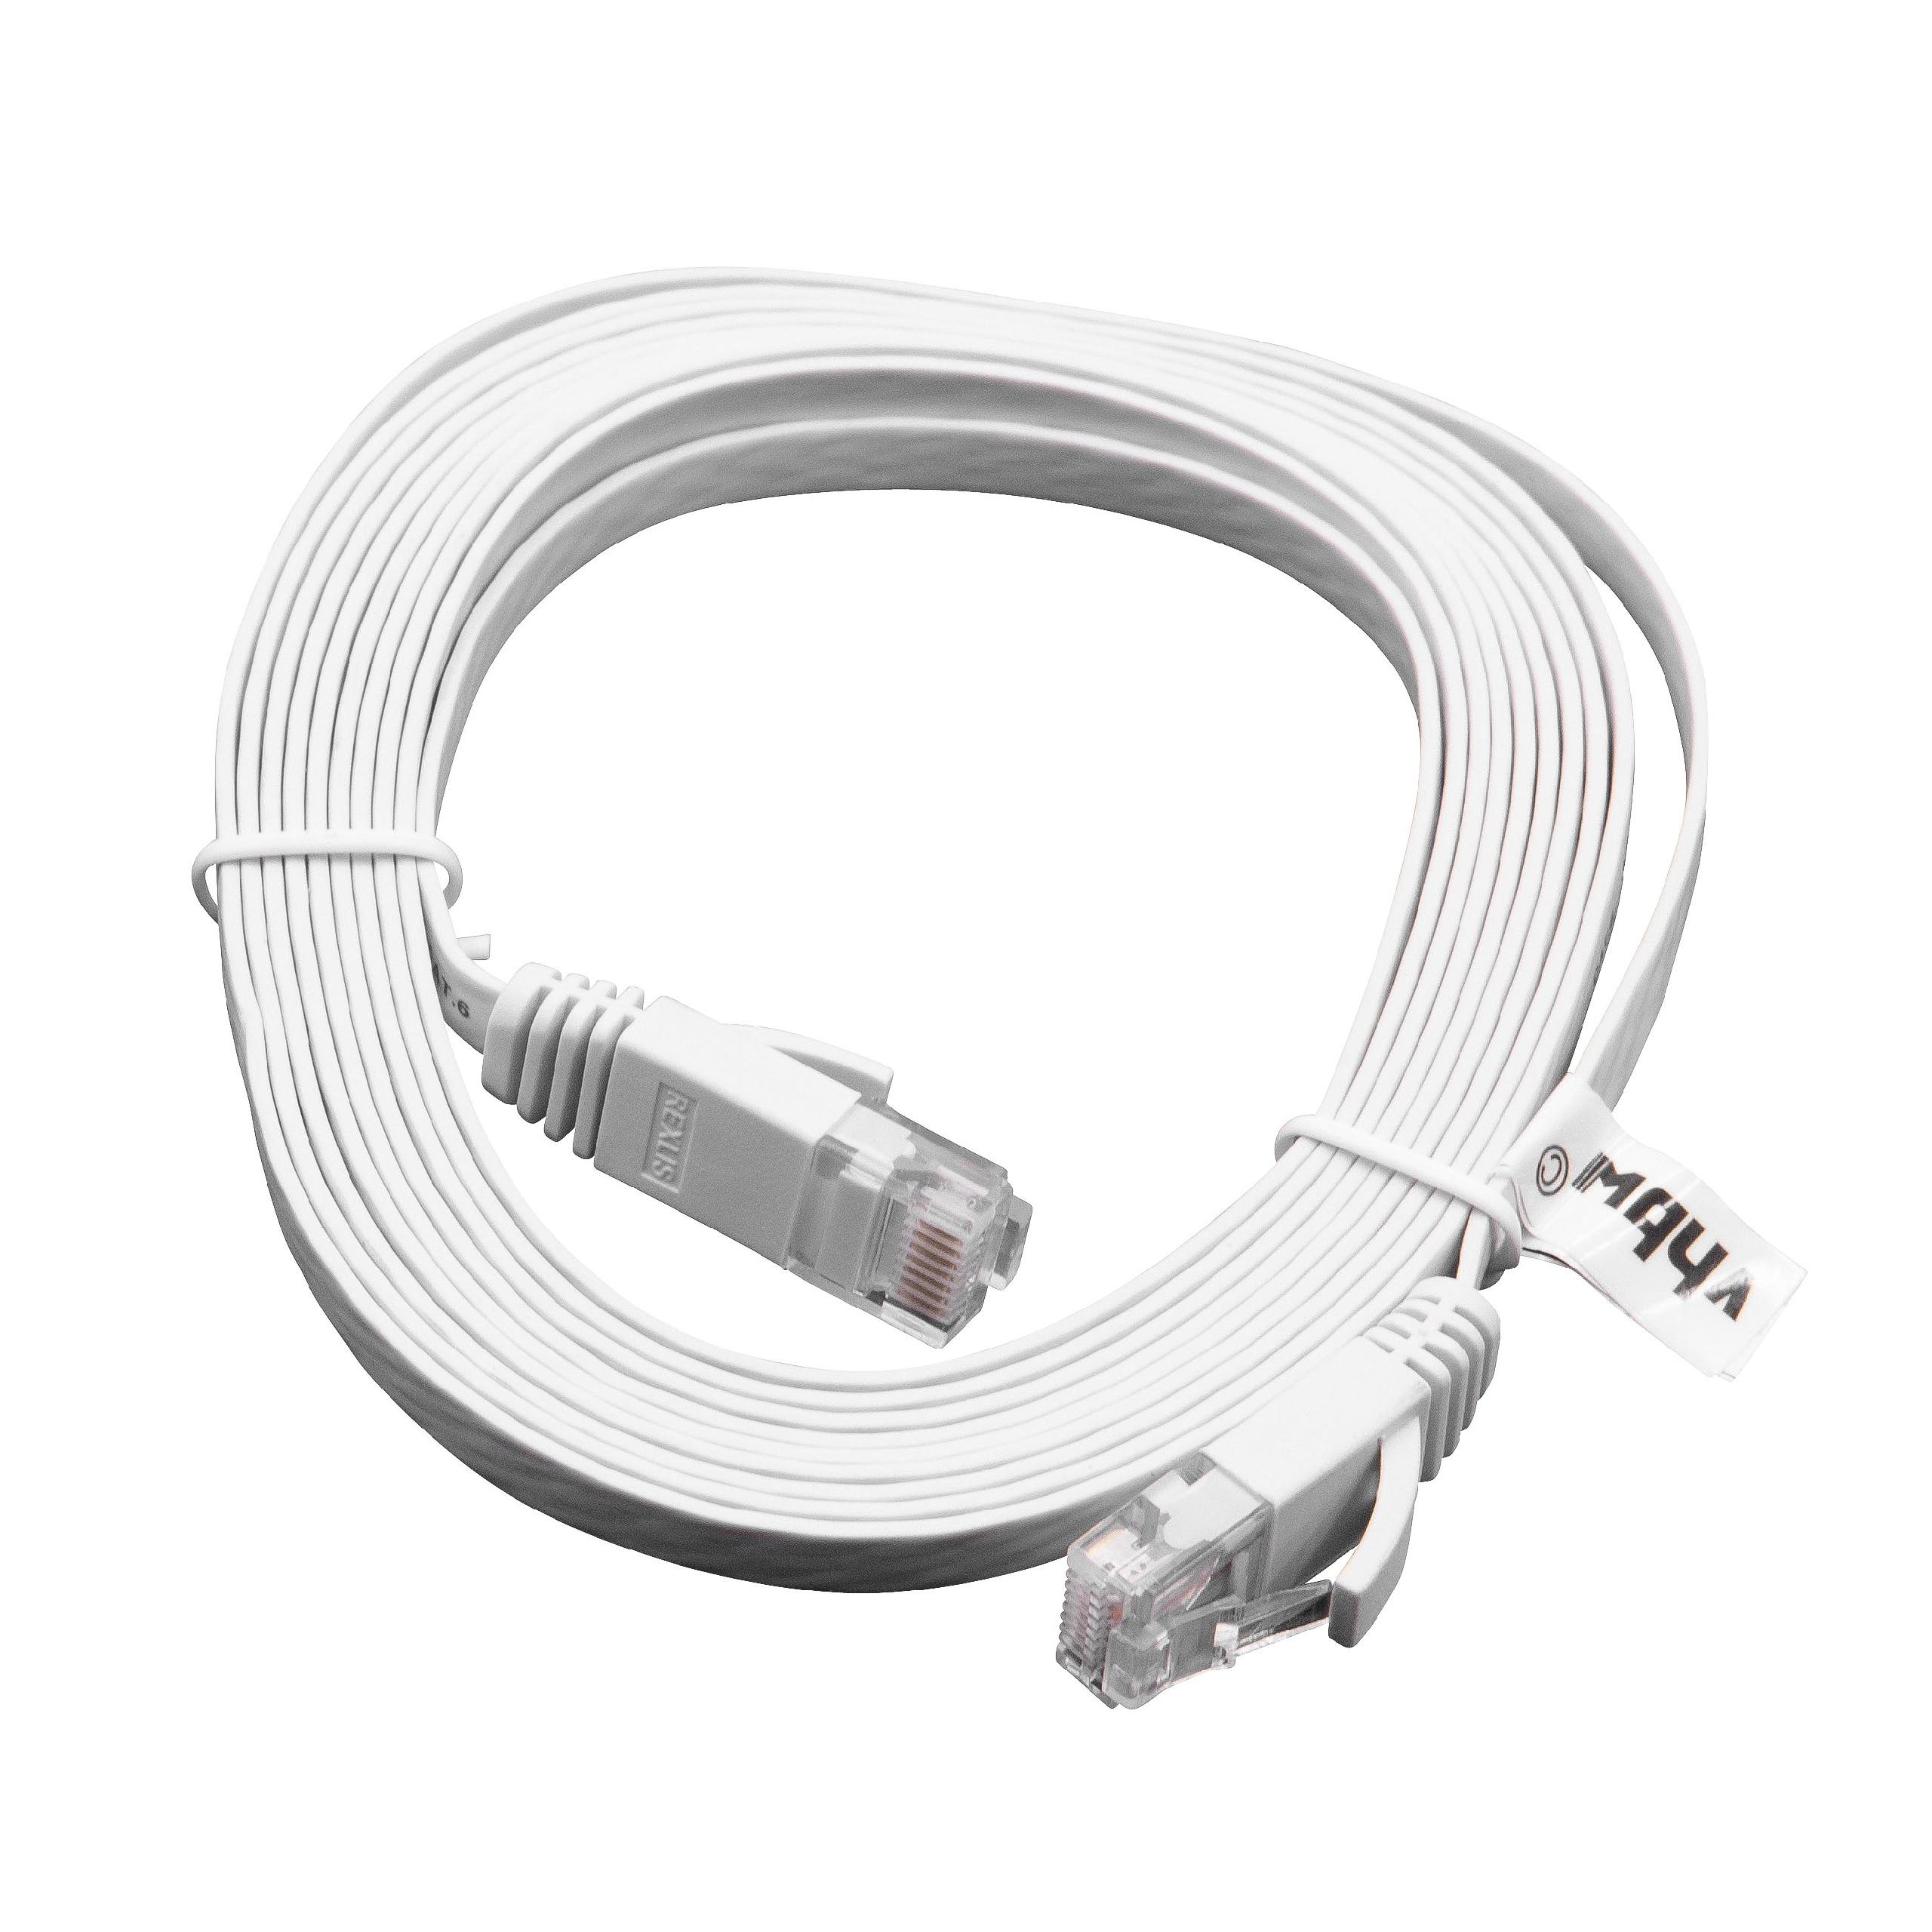 Netzwerkkabel LAN Kabel Patchkabel Cat6, 3m, weiß, flach